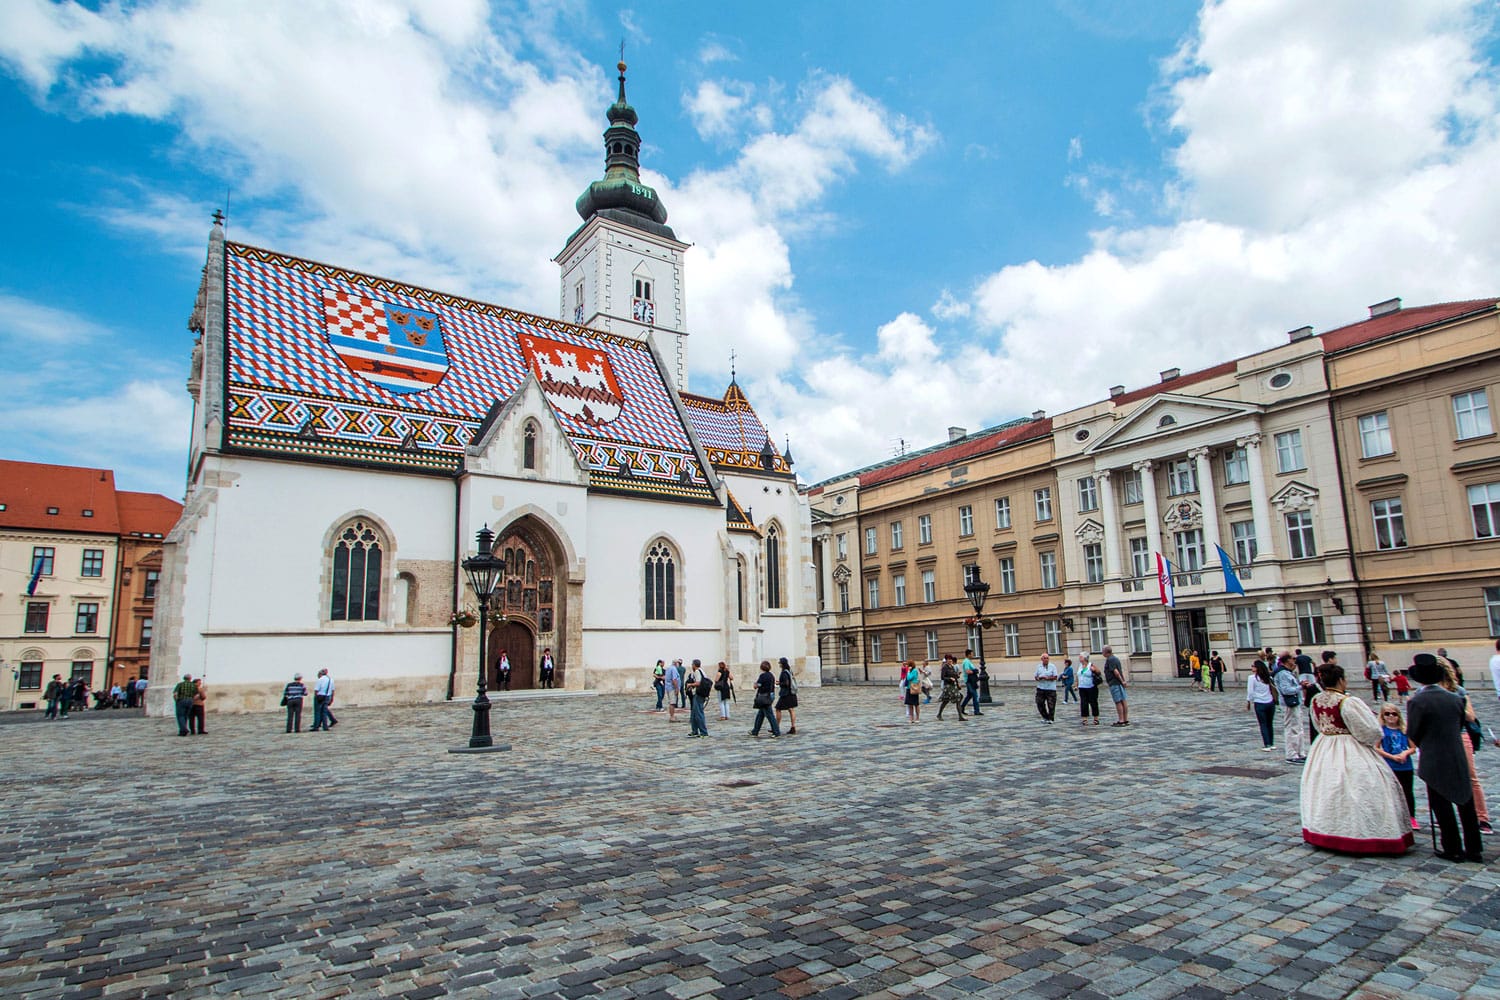 Πλατεία του Αγίου Μάρκου στο Ζάγκρεμπ, Κροατία, που περιβάλλεται από τουρίστες. Η πλατεία του Αγίου Μάρκου είναι το πολιτικό κέντρο της Κροατίας και δημοφιλής τουριστική τοποθεσία.